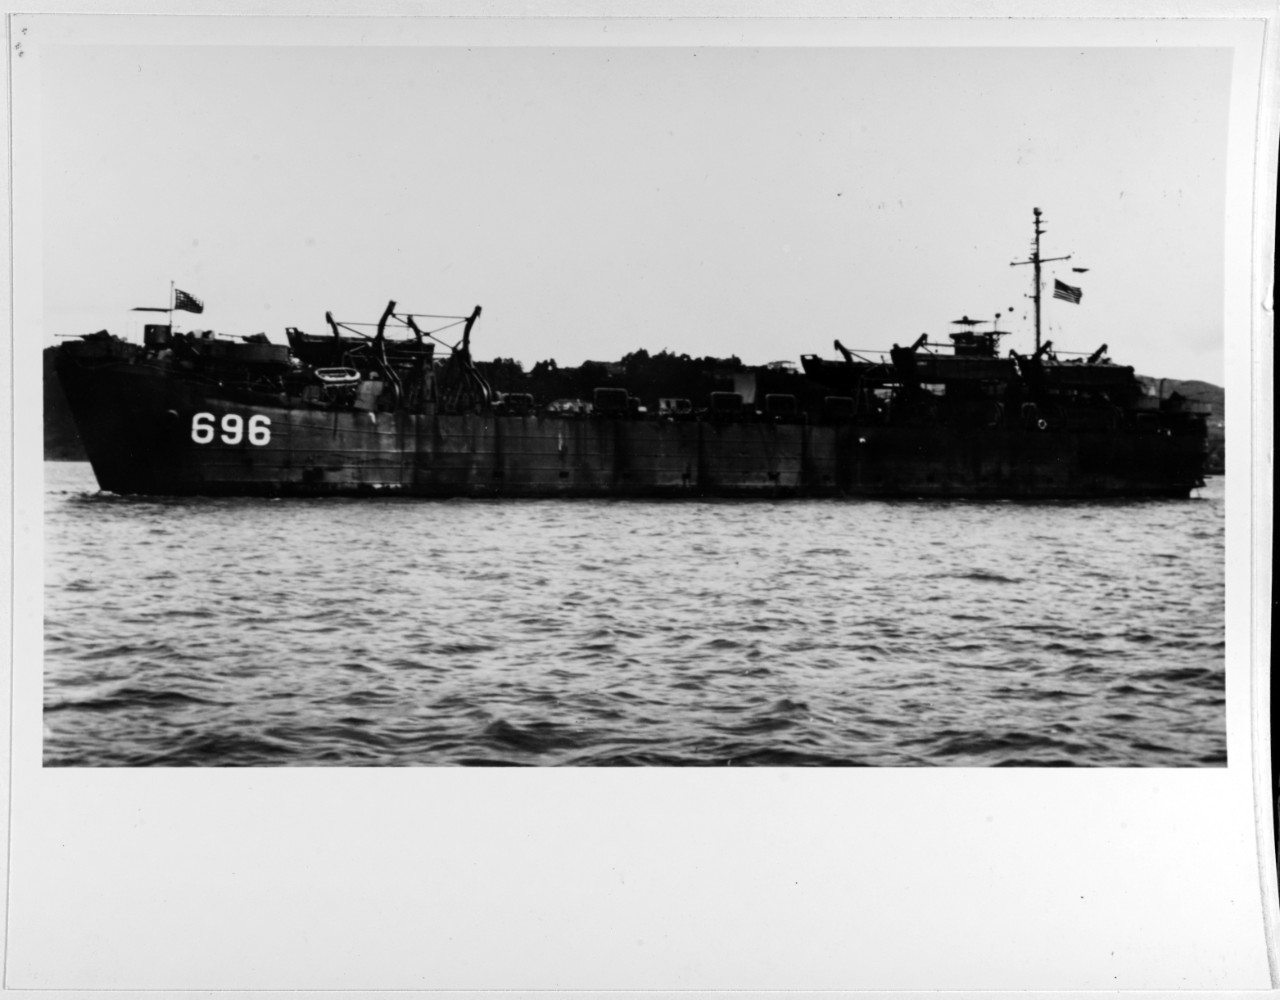 USS LST-696